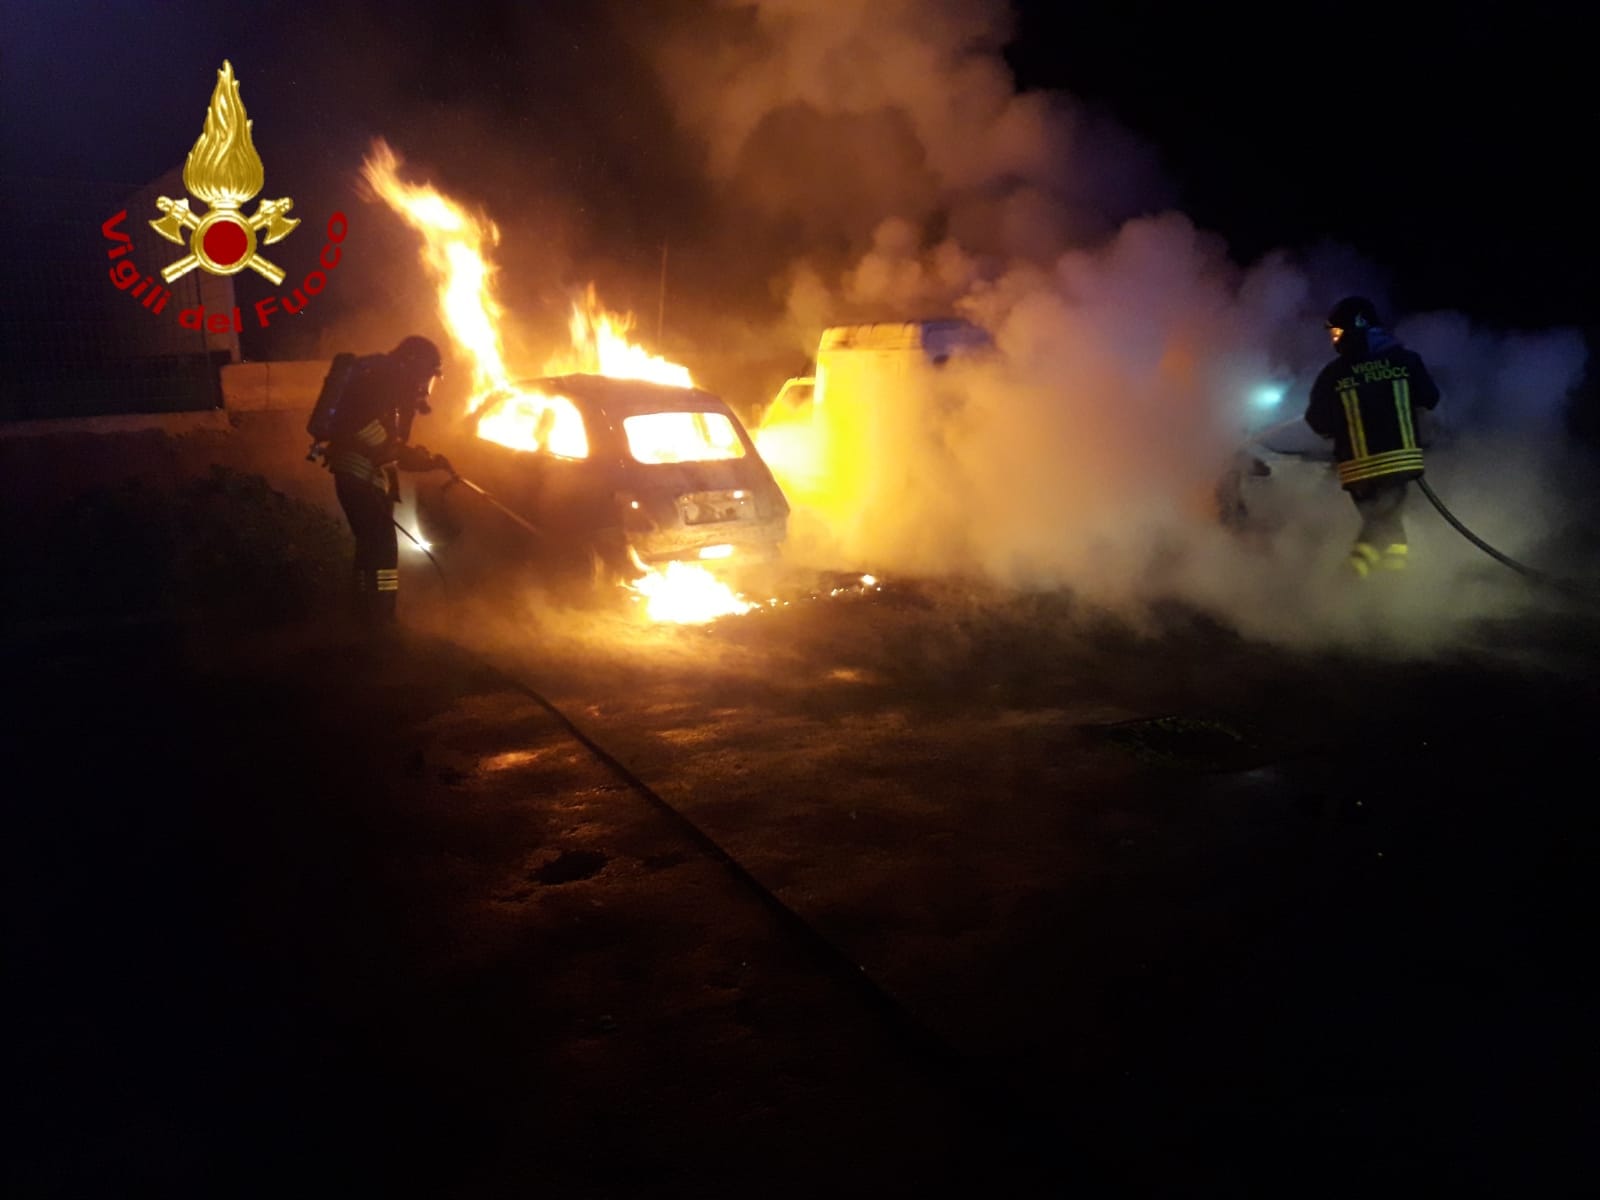 Notte di follia nel Catanese, maxi incendio di auto: due distrutte, si pensa a un piromane – DETTAGLI